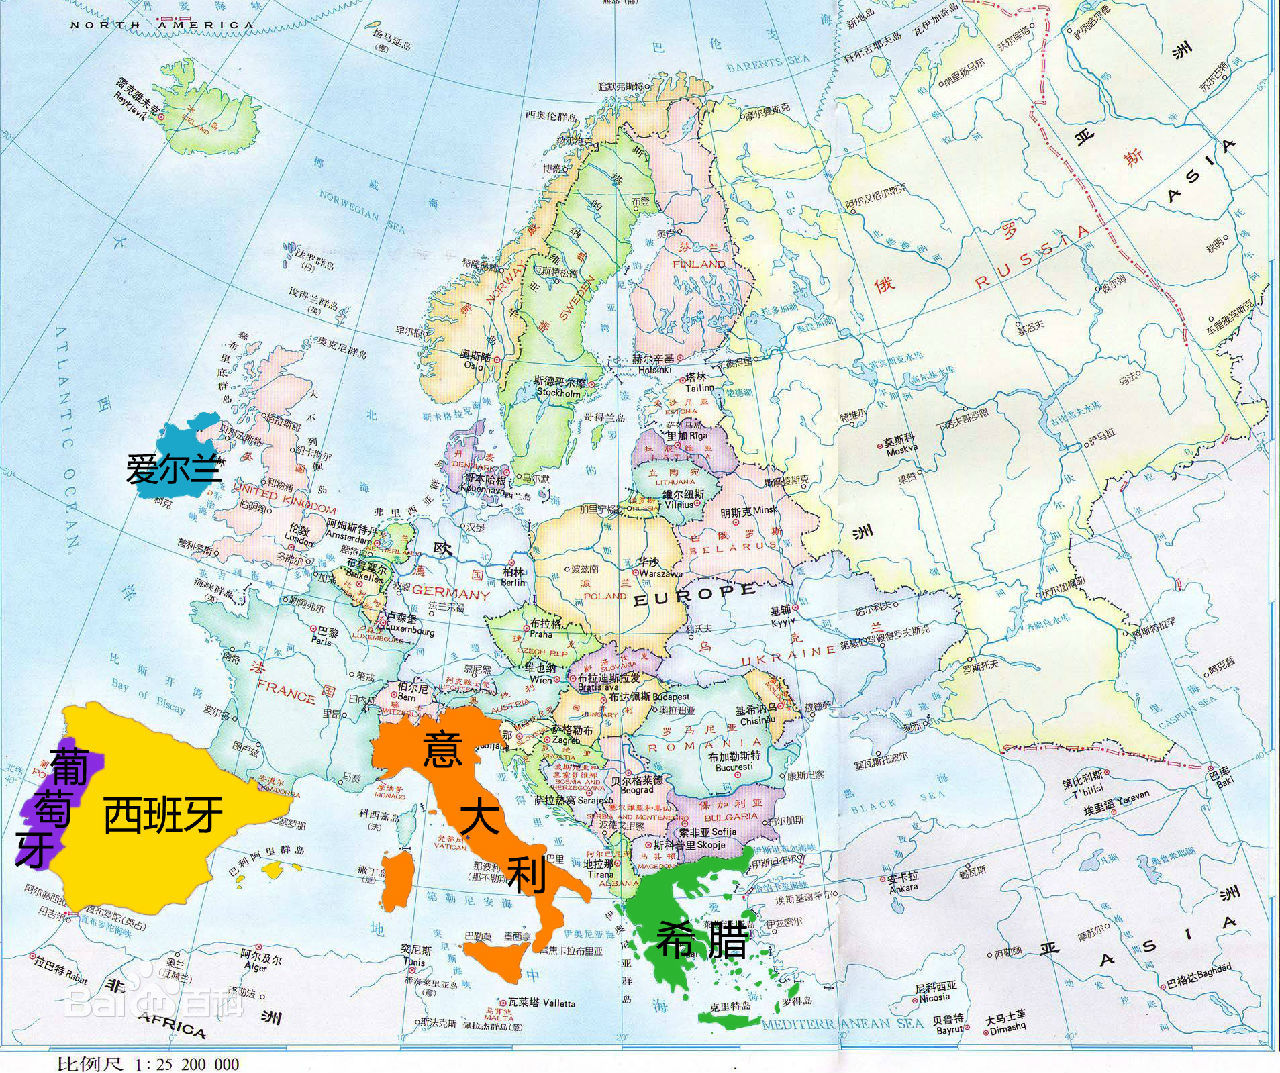 意大利地图中英文对照版全图 - 中英世界地图 - 地理教师网